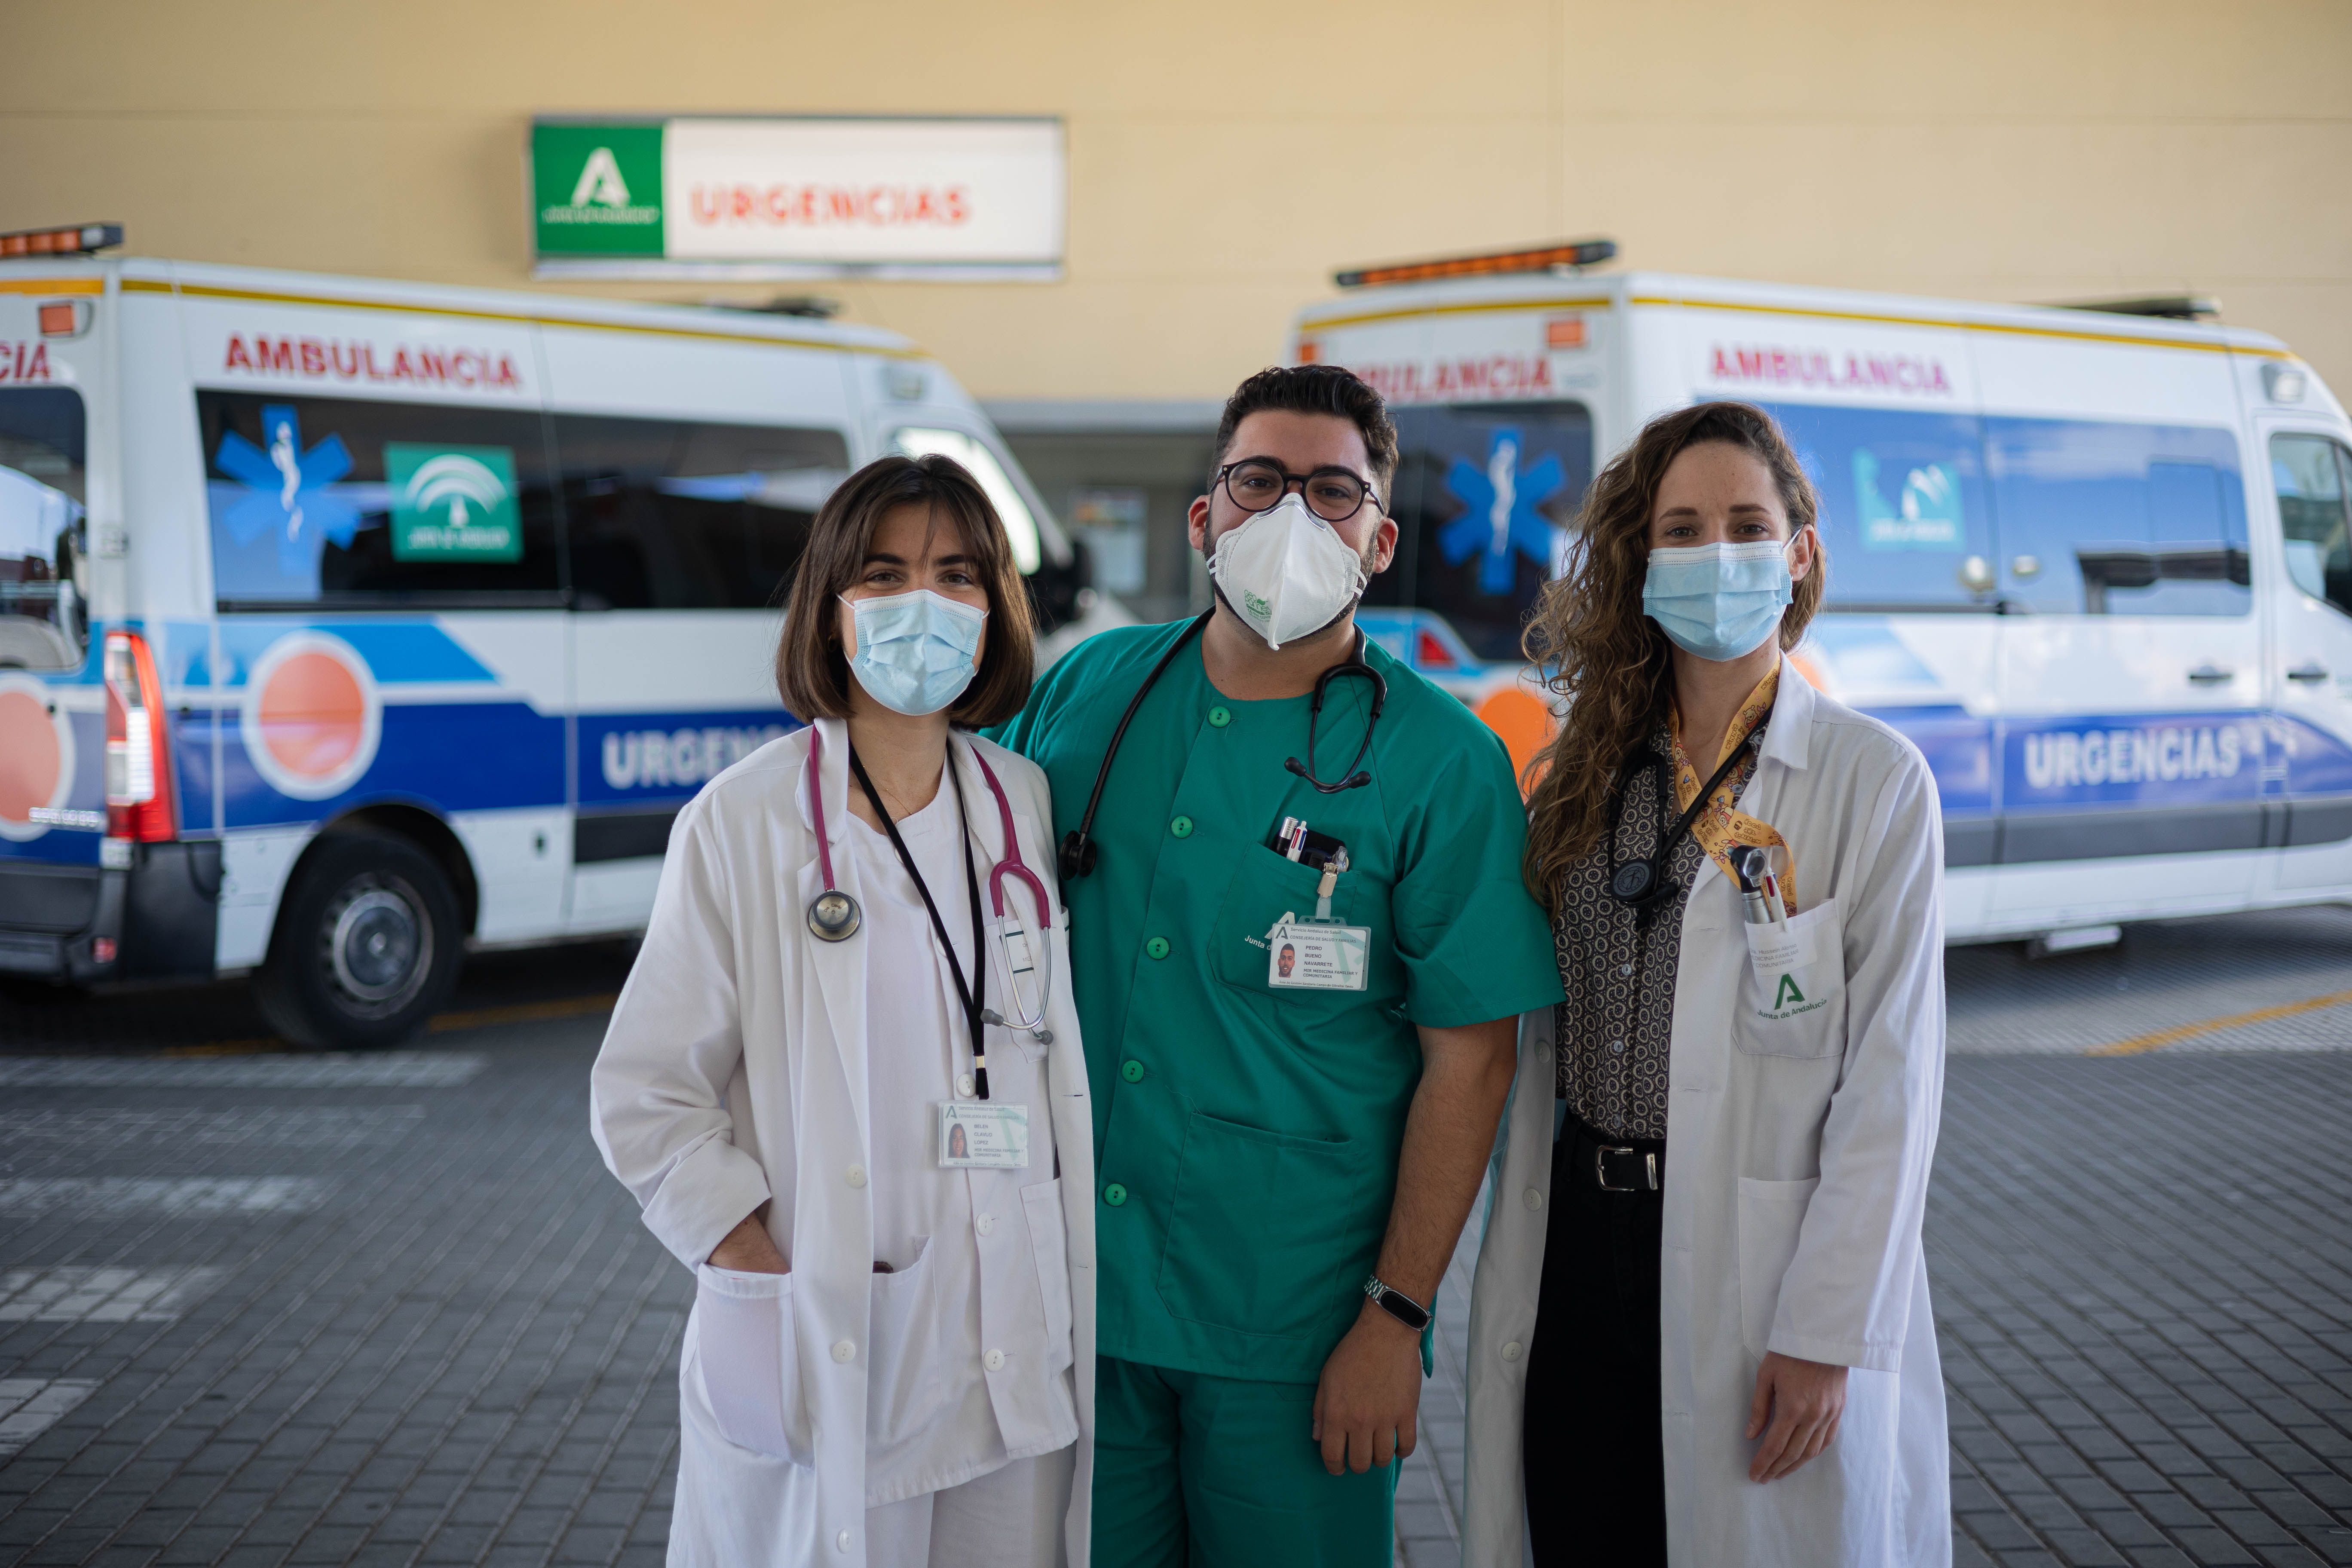 Belén, Pedro y Dania, a las puertas del hospital Punta de Europa de Algeciras. Los sanitarios que nos salvarán de futuras pandemias. El papel de la Voz. 